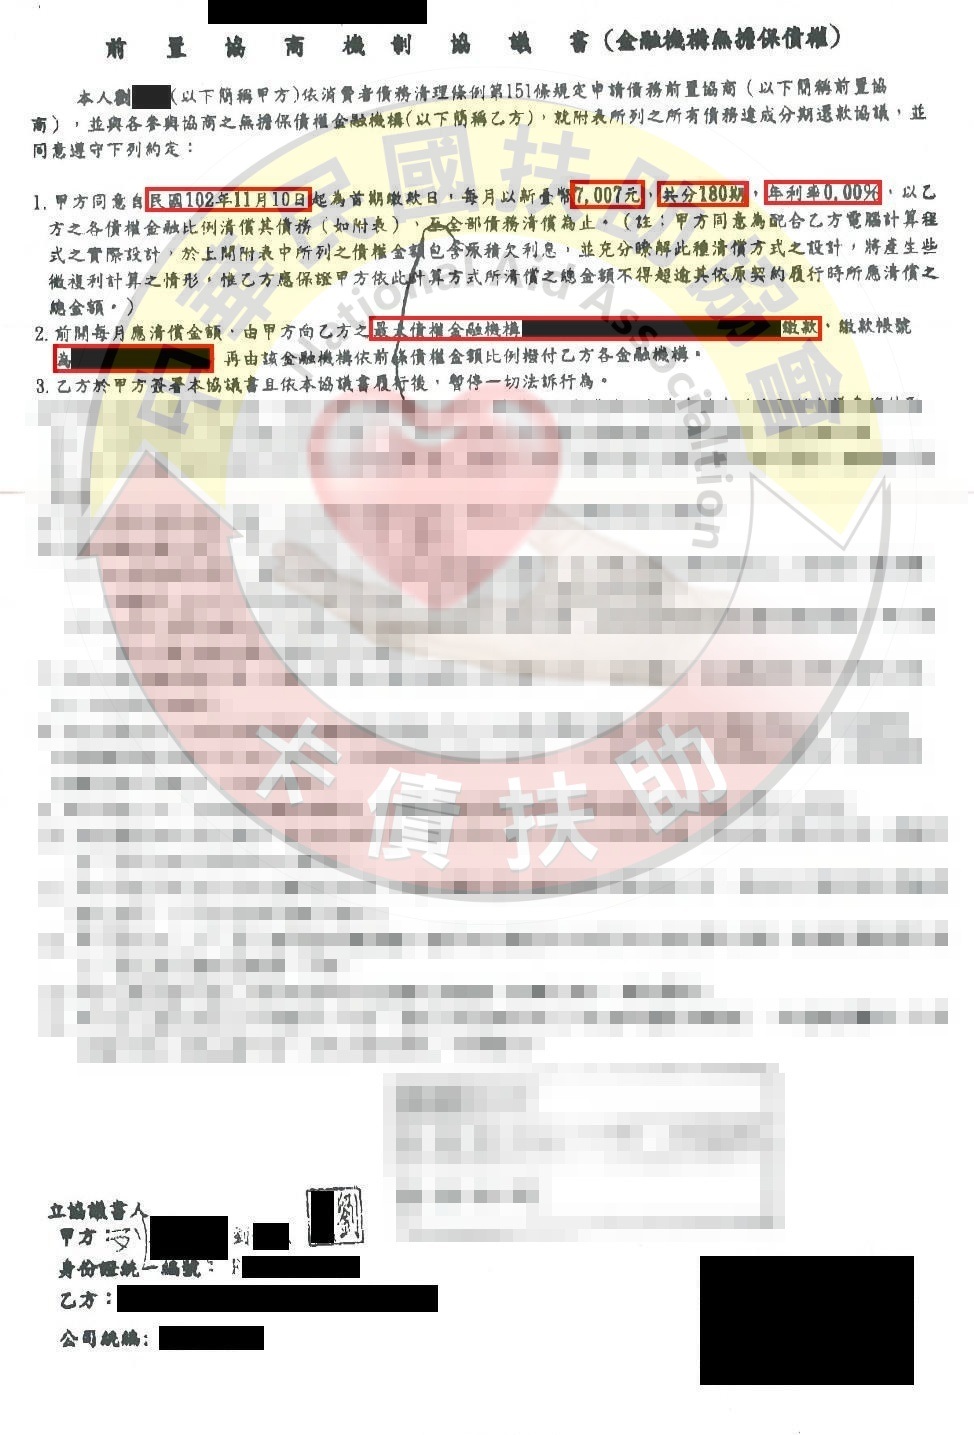 新北劉小姐-協商成功依180期0%月付7,007元